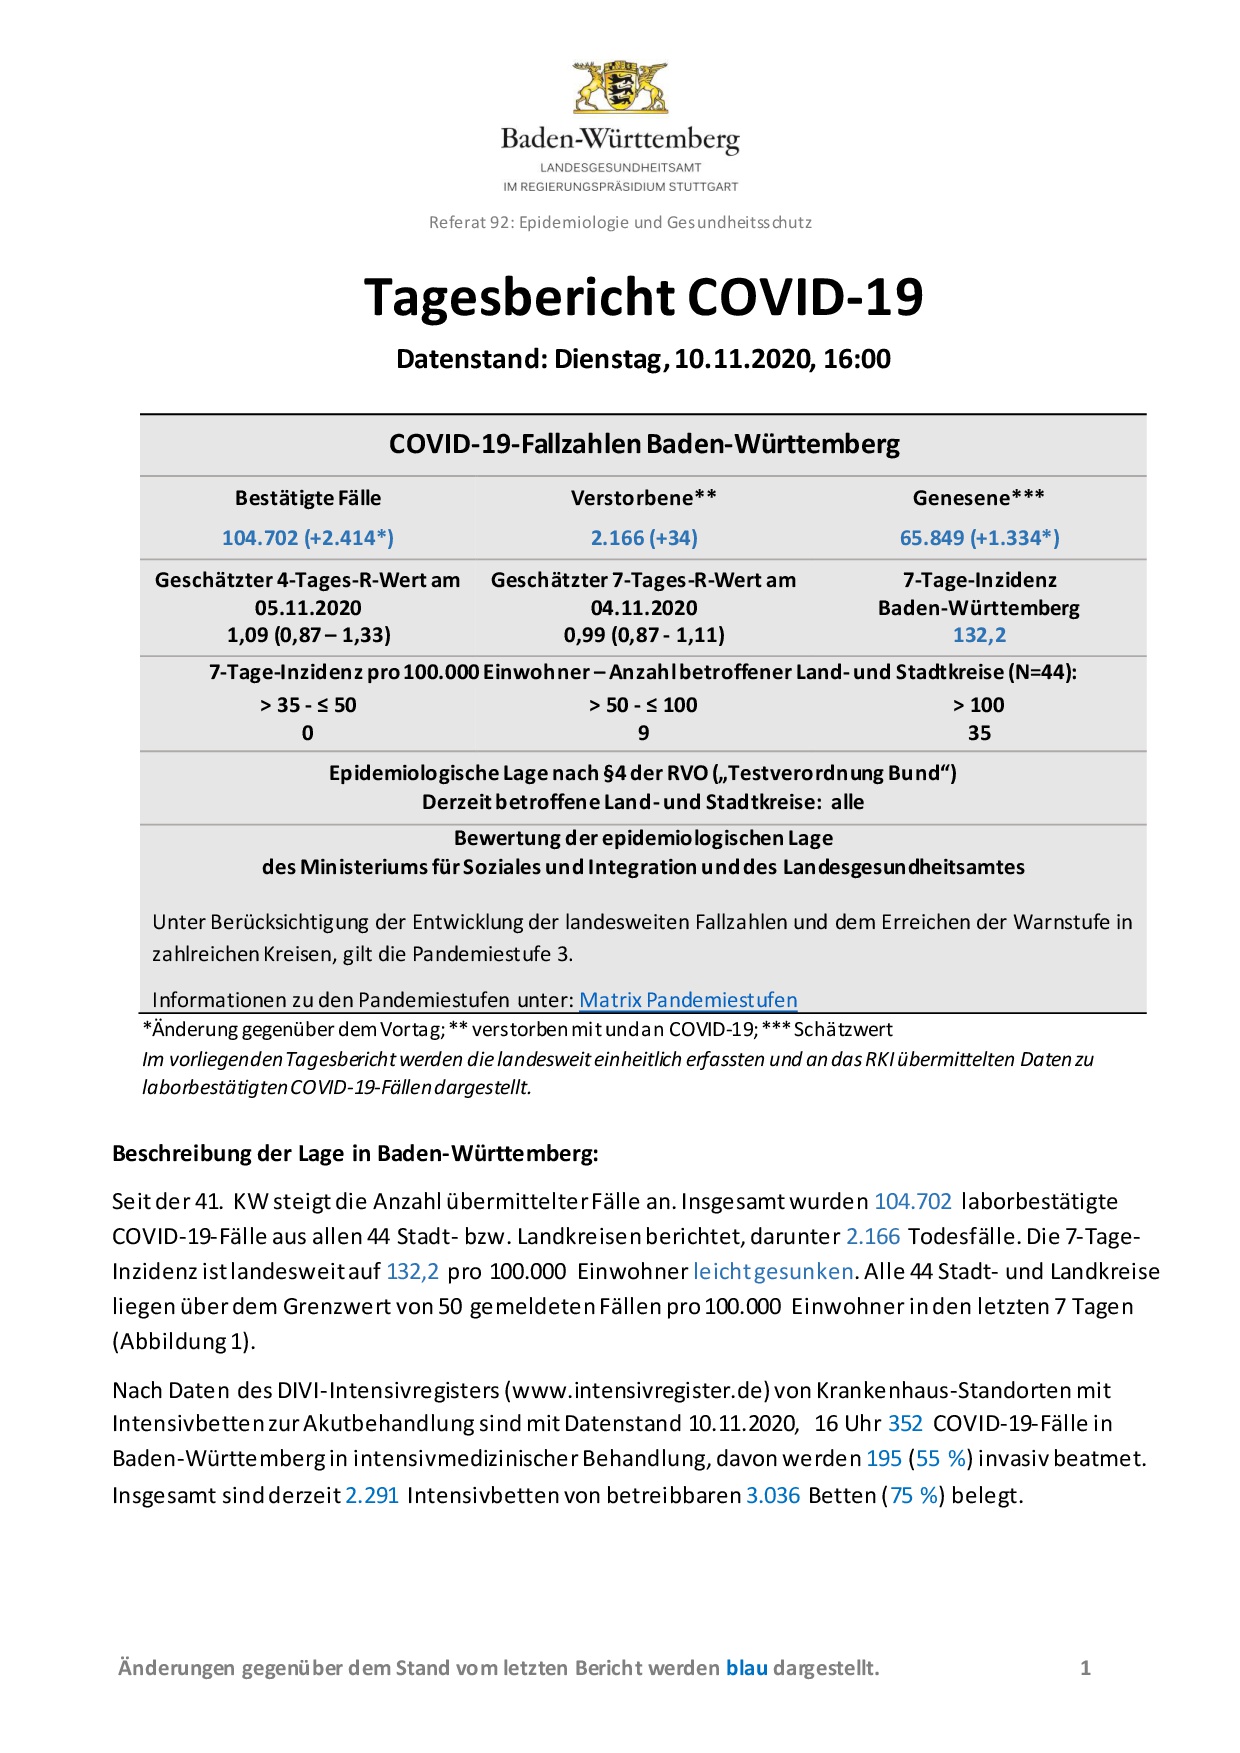 COVID-19 Tagesbericht (10.11.2020) des Landesgesundheitsamts Baden-Württemberg – (ausführlicher)